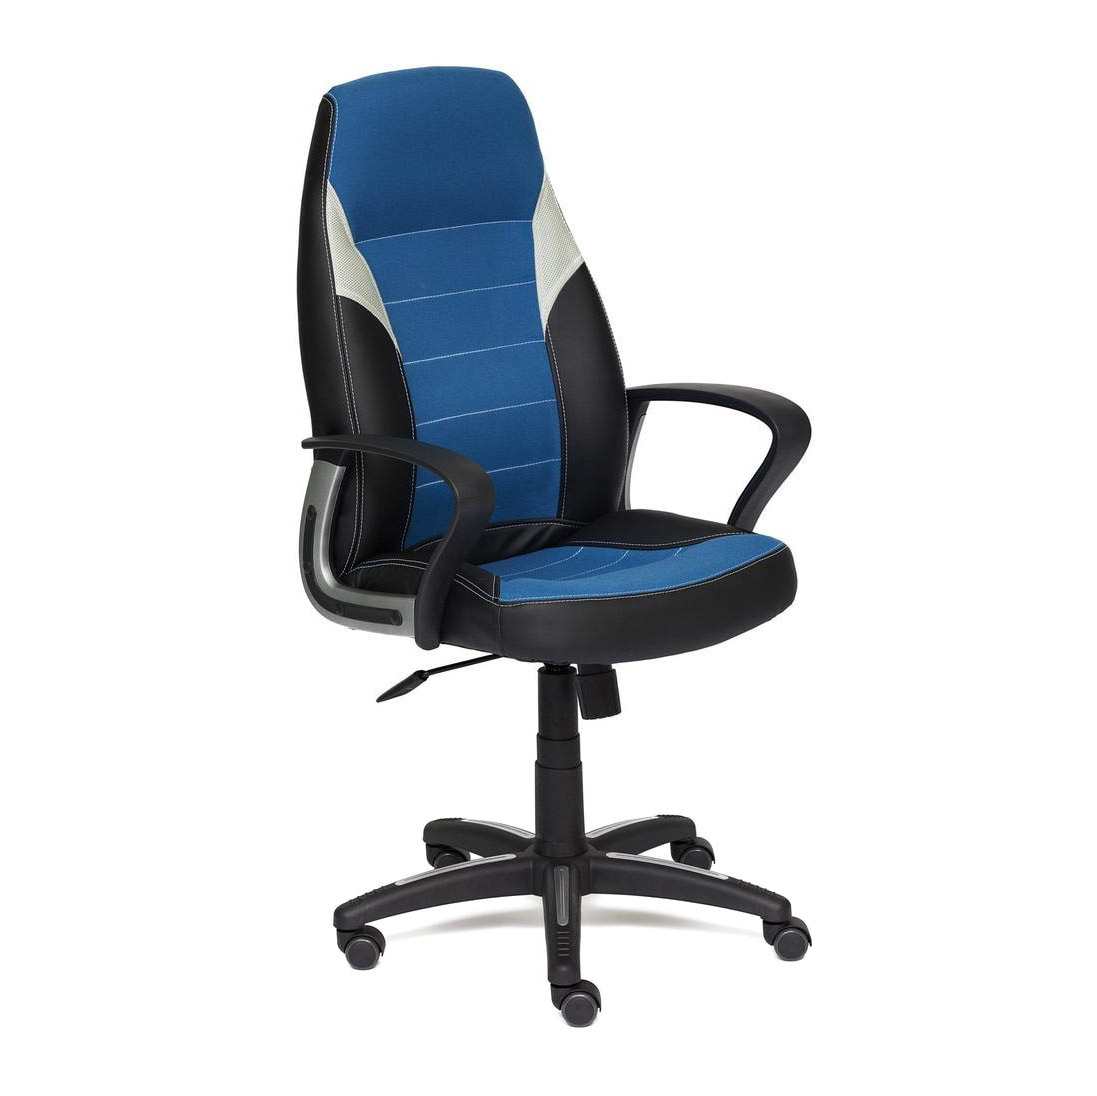 Кресло компьютерное TC синий 131х65х48 см офисное кресло компьютерное кресло рабочее кресло складное эргономичное кресло поворотная подставка для ног регулируемое наклонное се